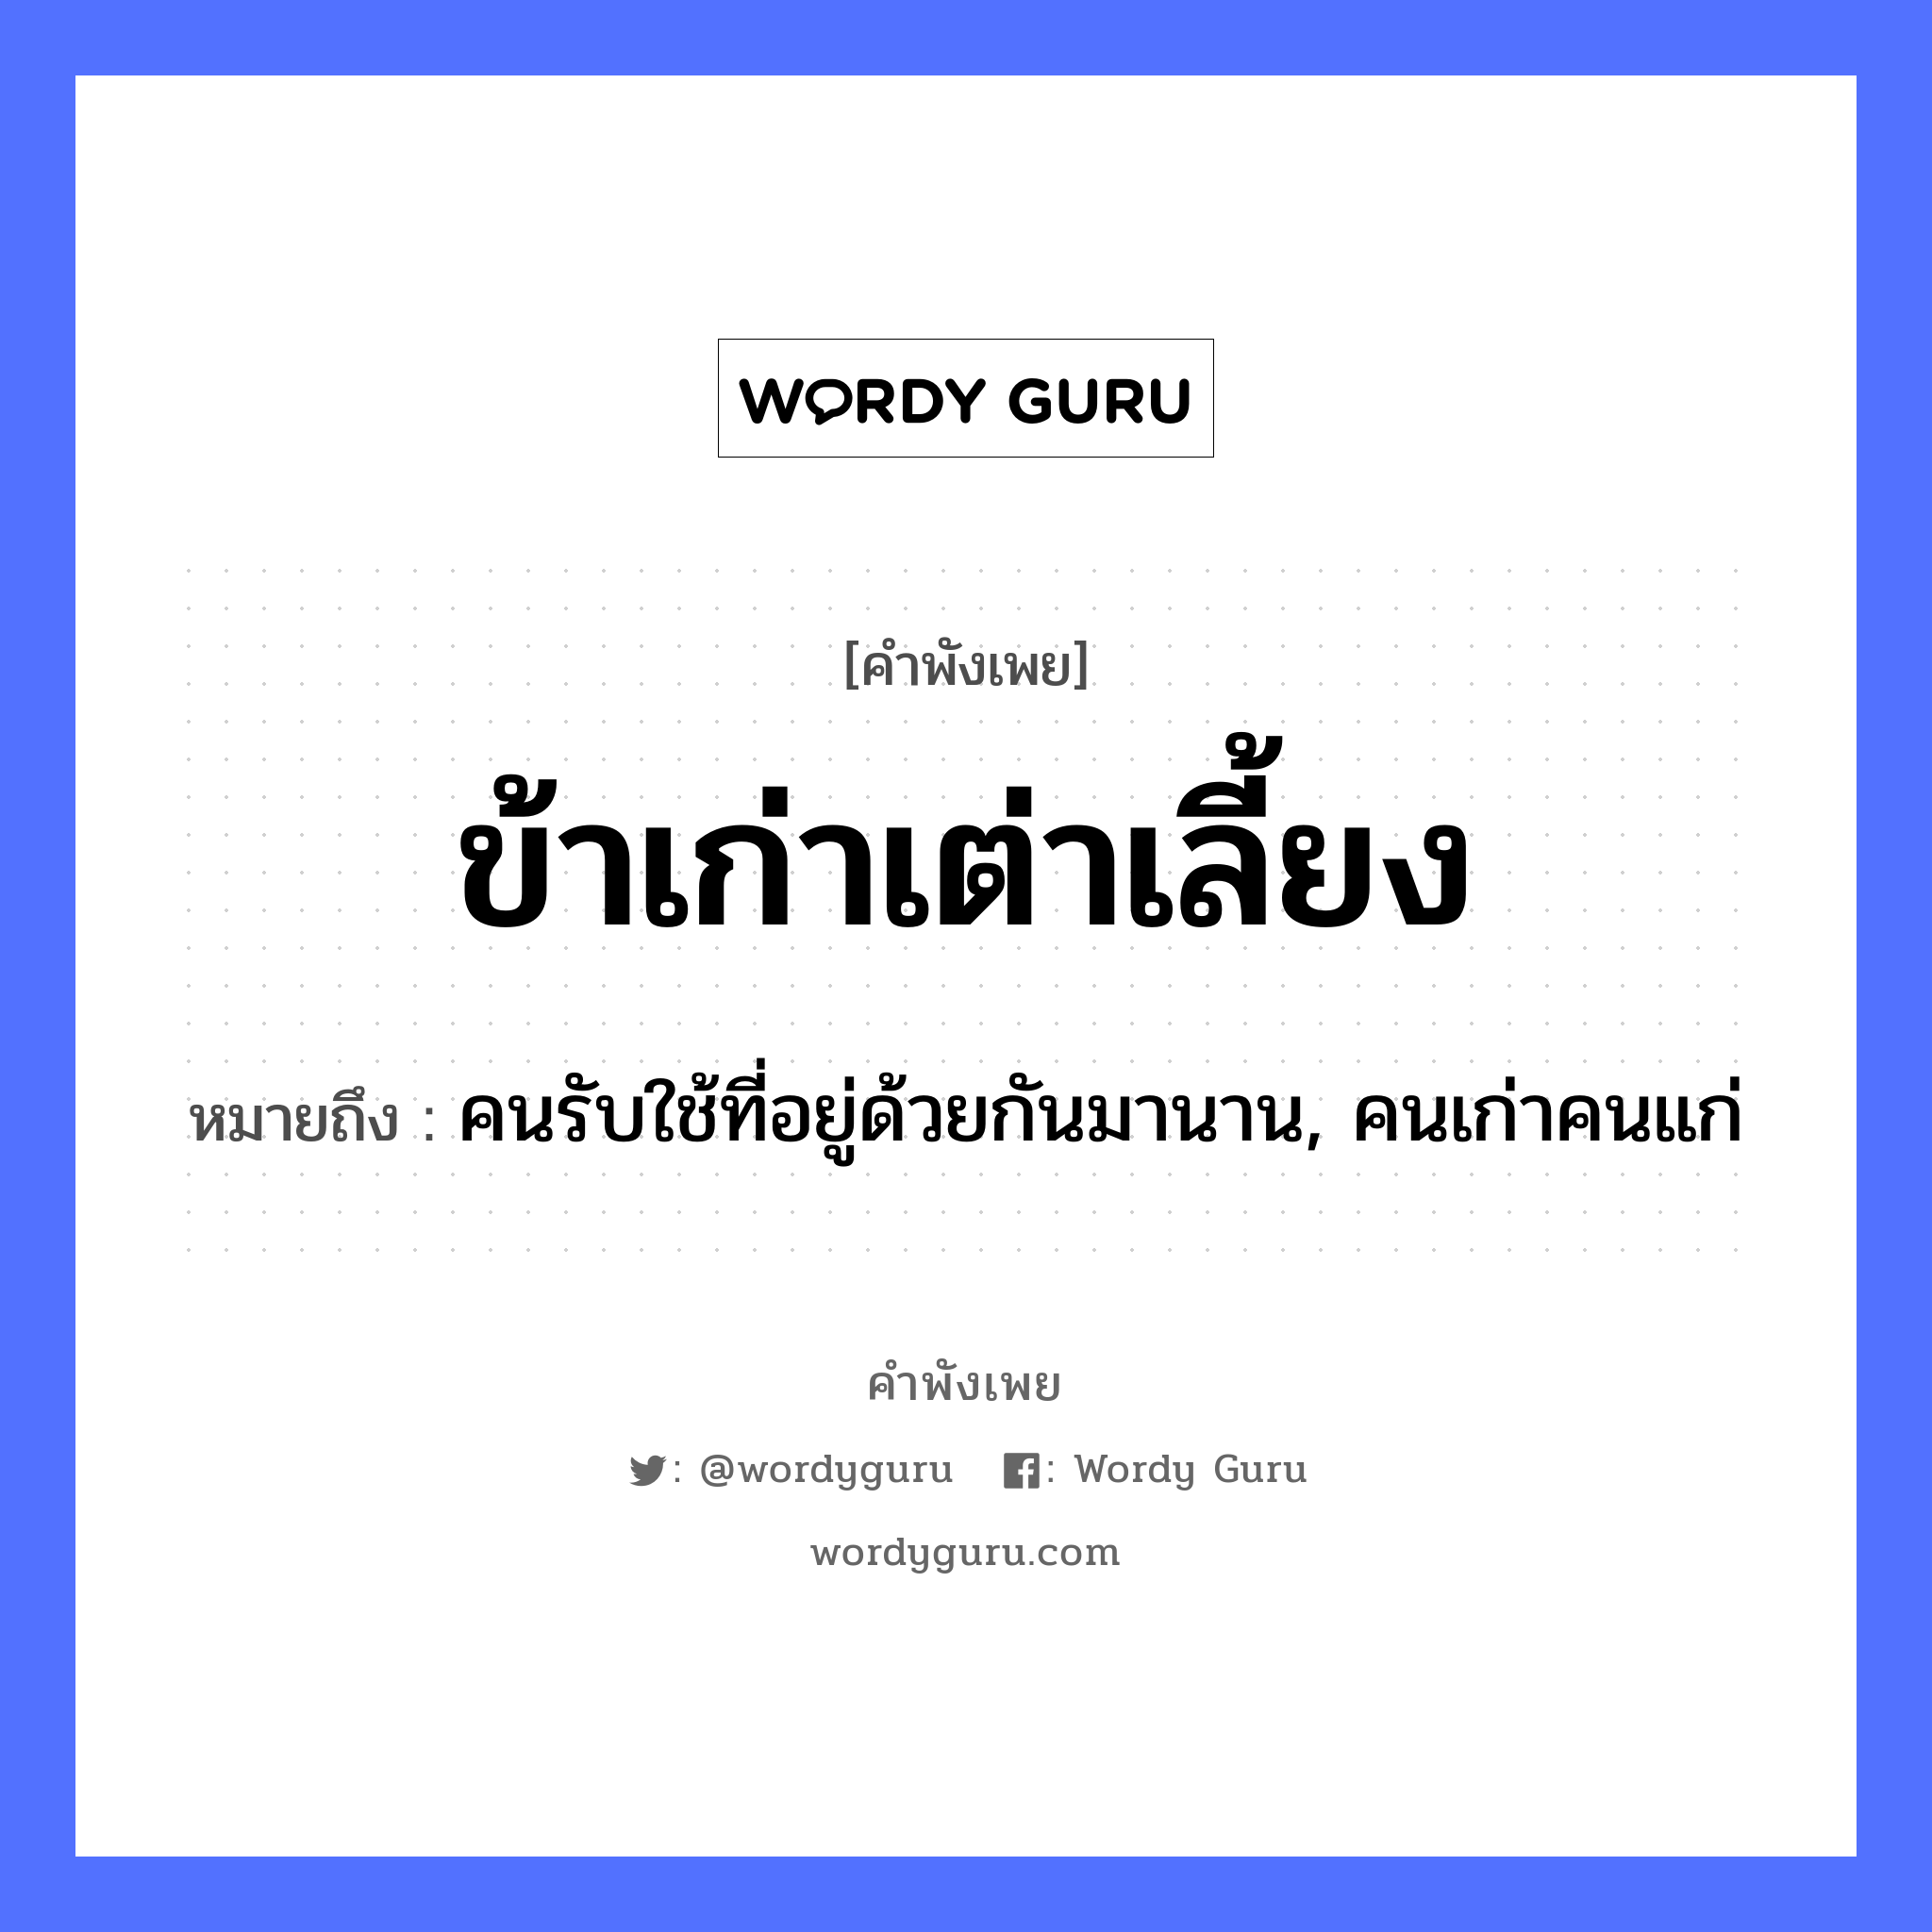 สำนวนไทย: ข้าเก่าเต่าเลี้ยง หมายถึง?, หมายถึง คนรับใช้ที่อยู่ด้วยกันมานาน, คนเก่าคนแก่ คำนาม คน